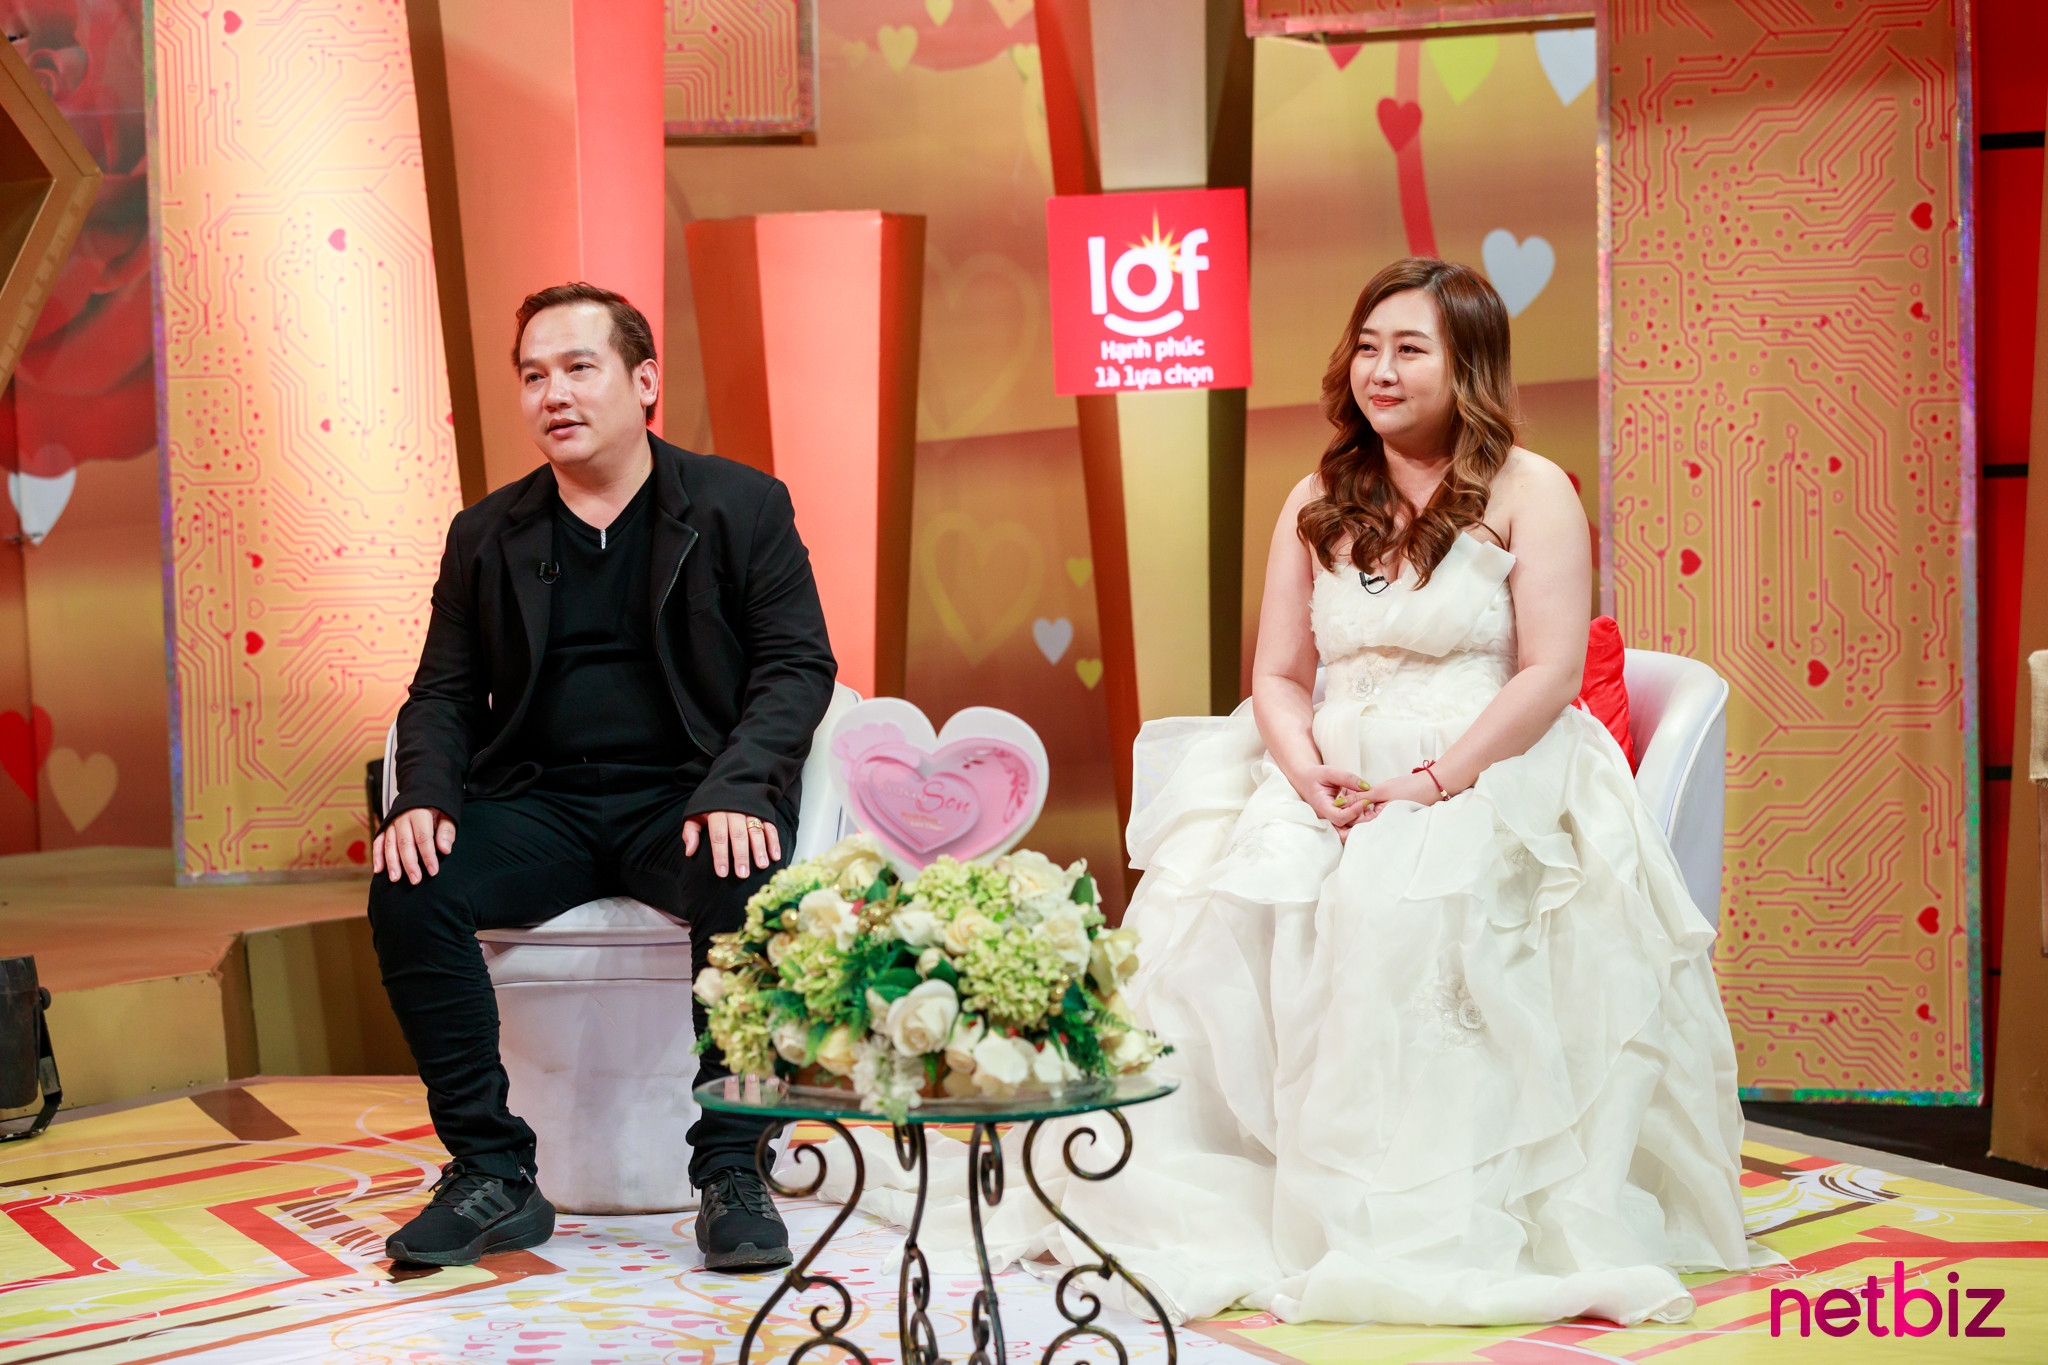 Cô gái Việt ngỡ ngàng trước lễ cưới hoành tráng khi lấy chồng người Thái Lan